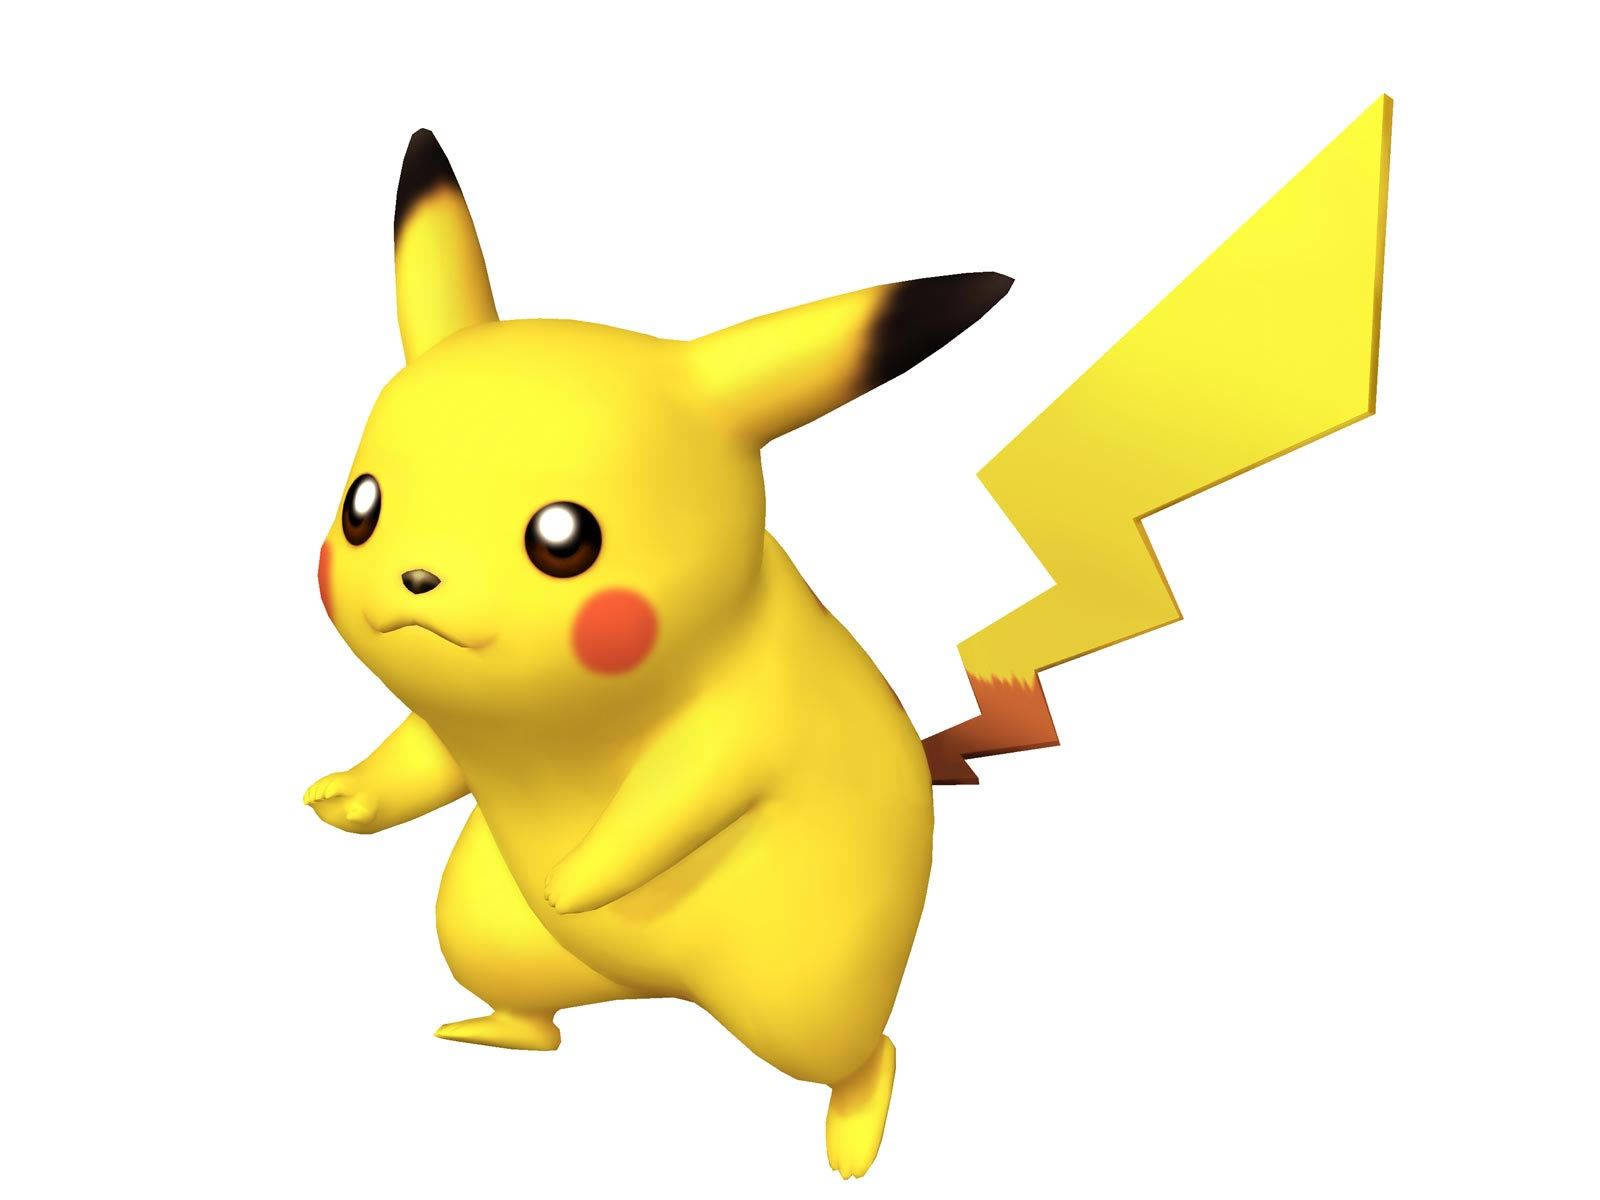 Pikachu 3d Pokémon Game Model Wallpaper